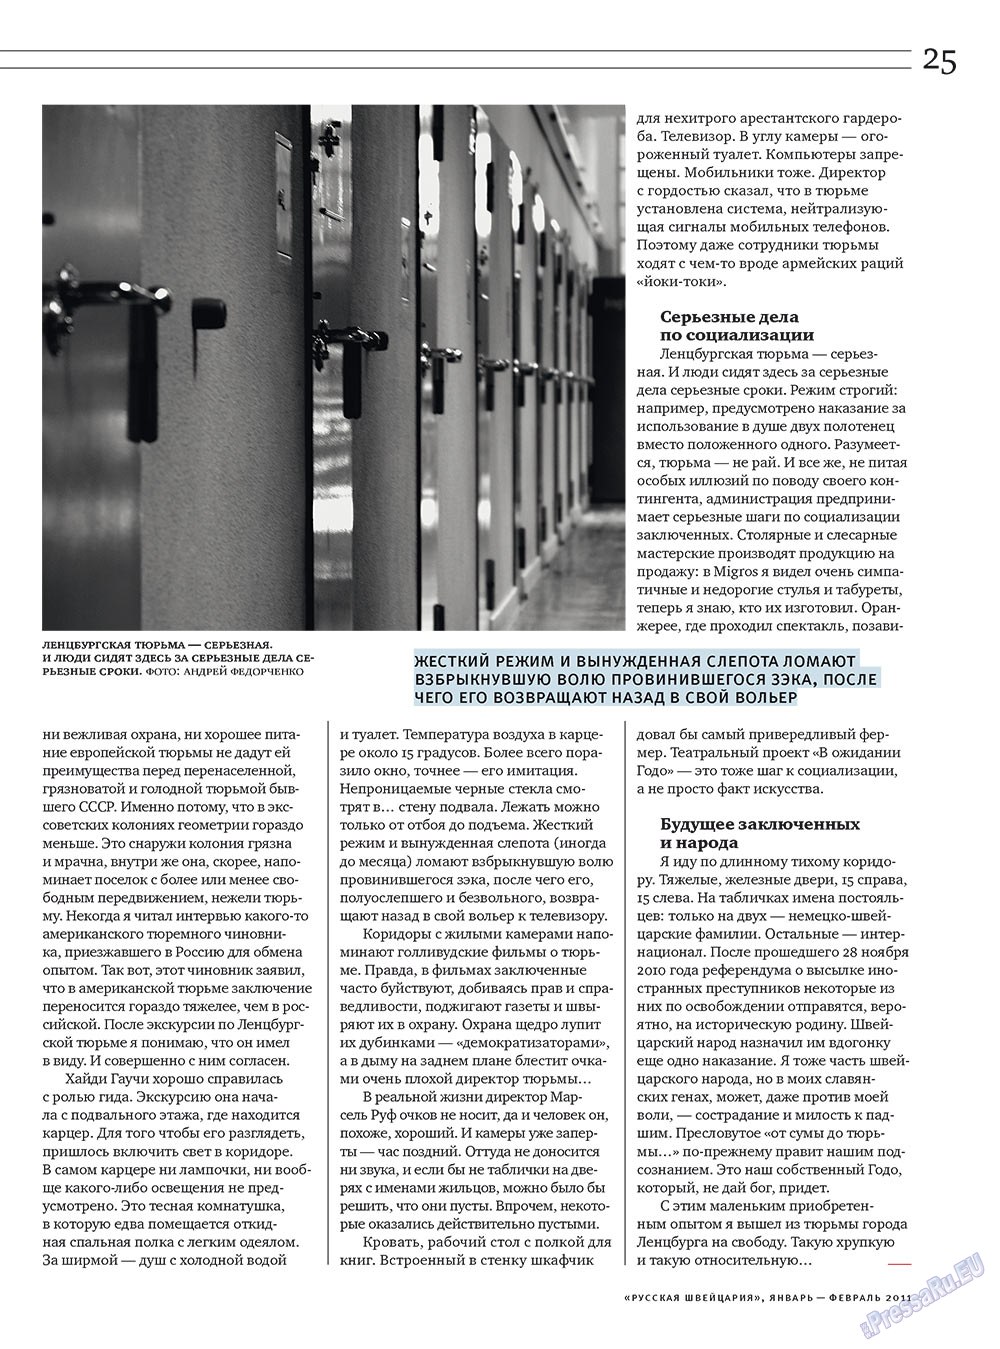 Русская Швейцария, журнал. 2011 №1 стр.25